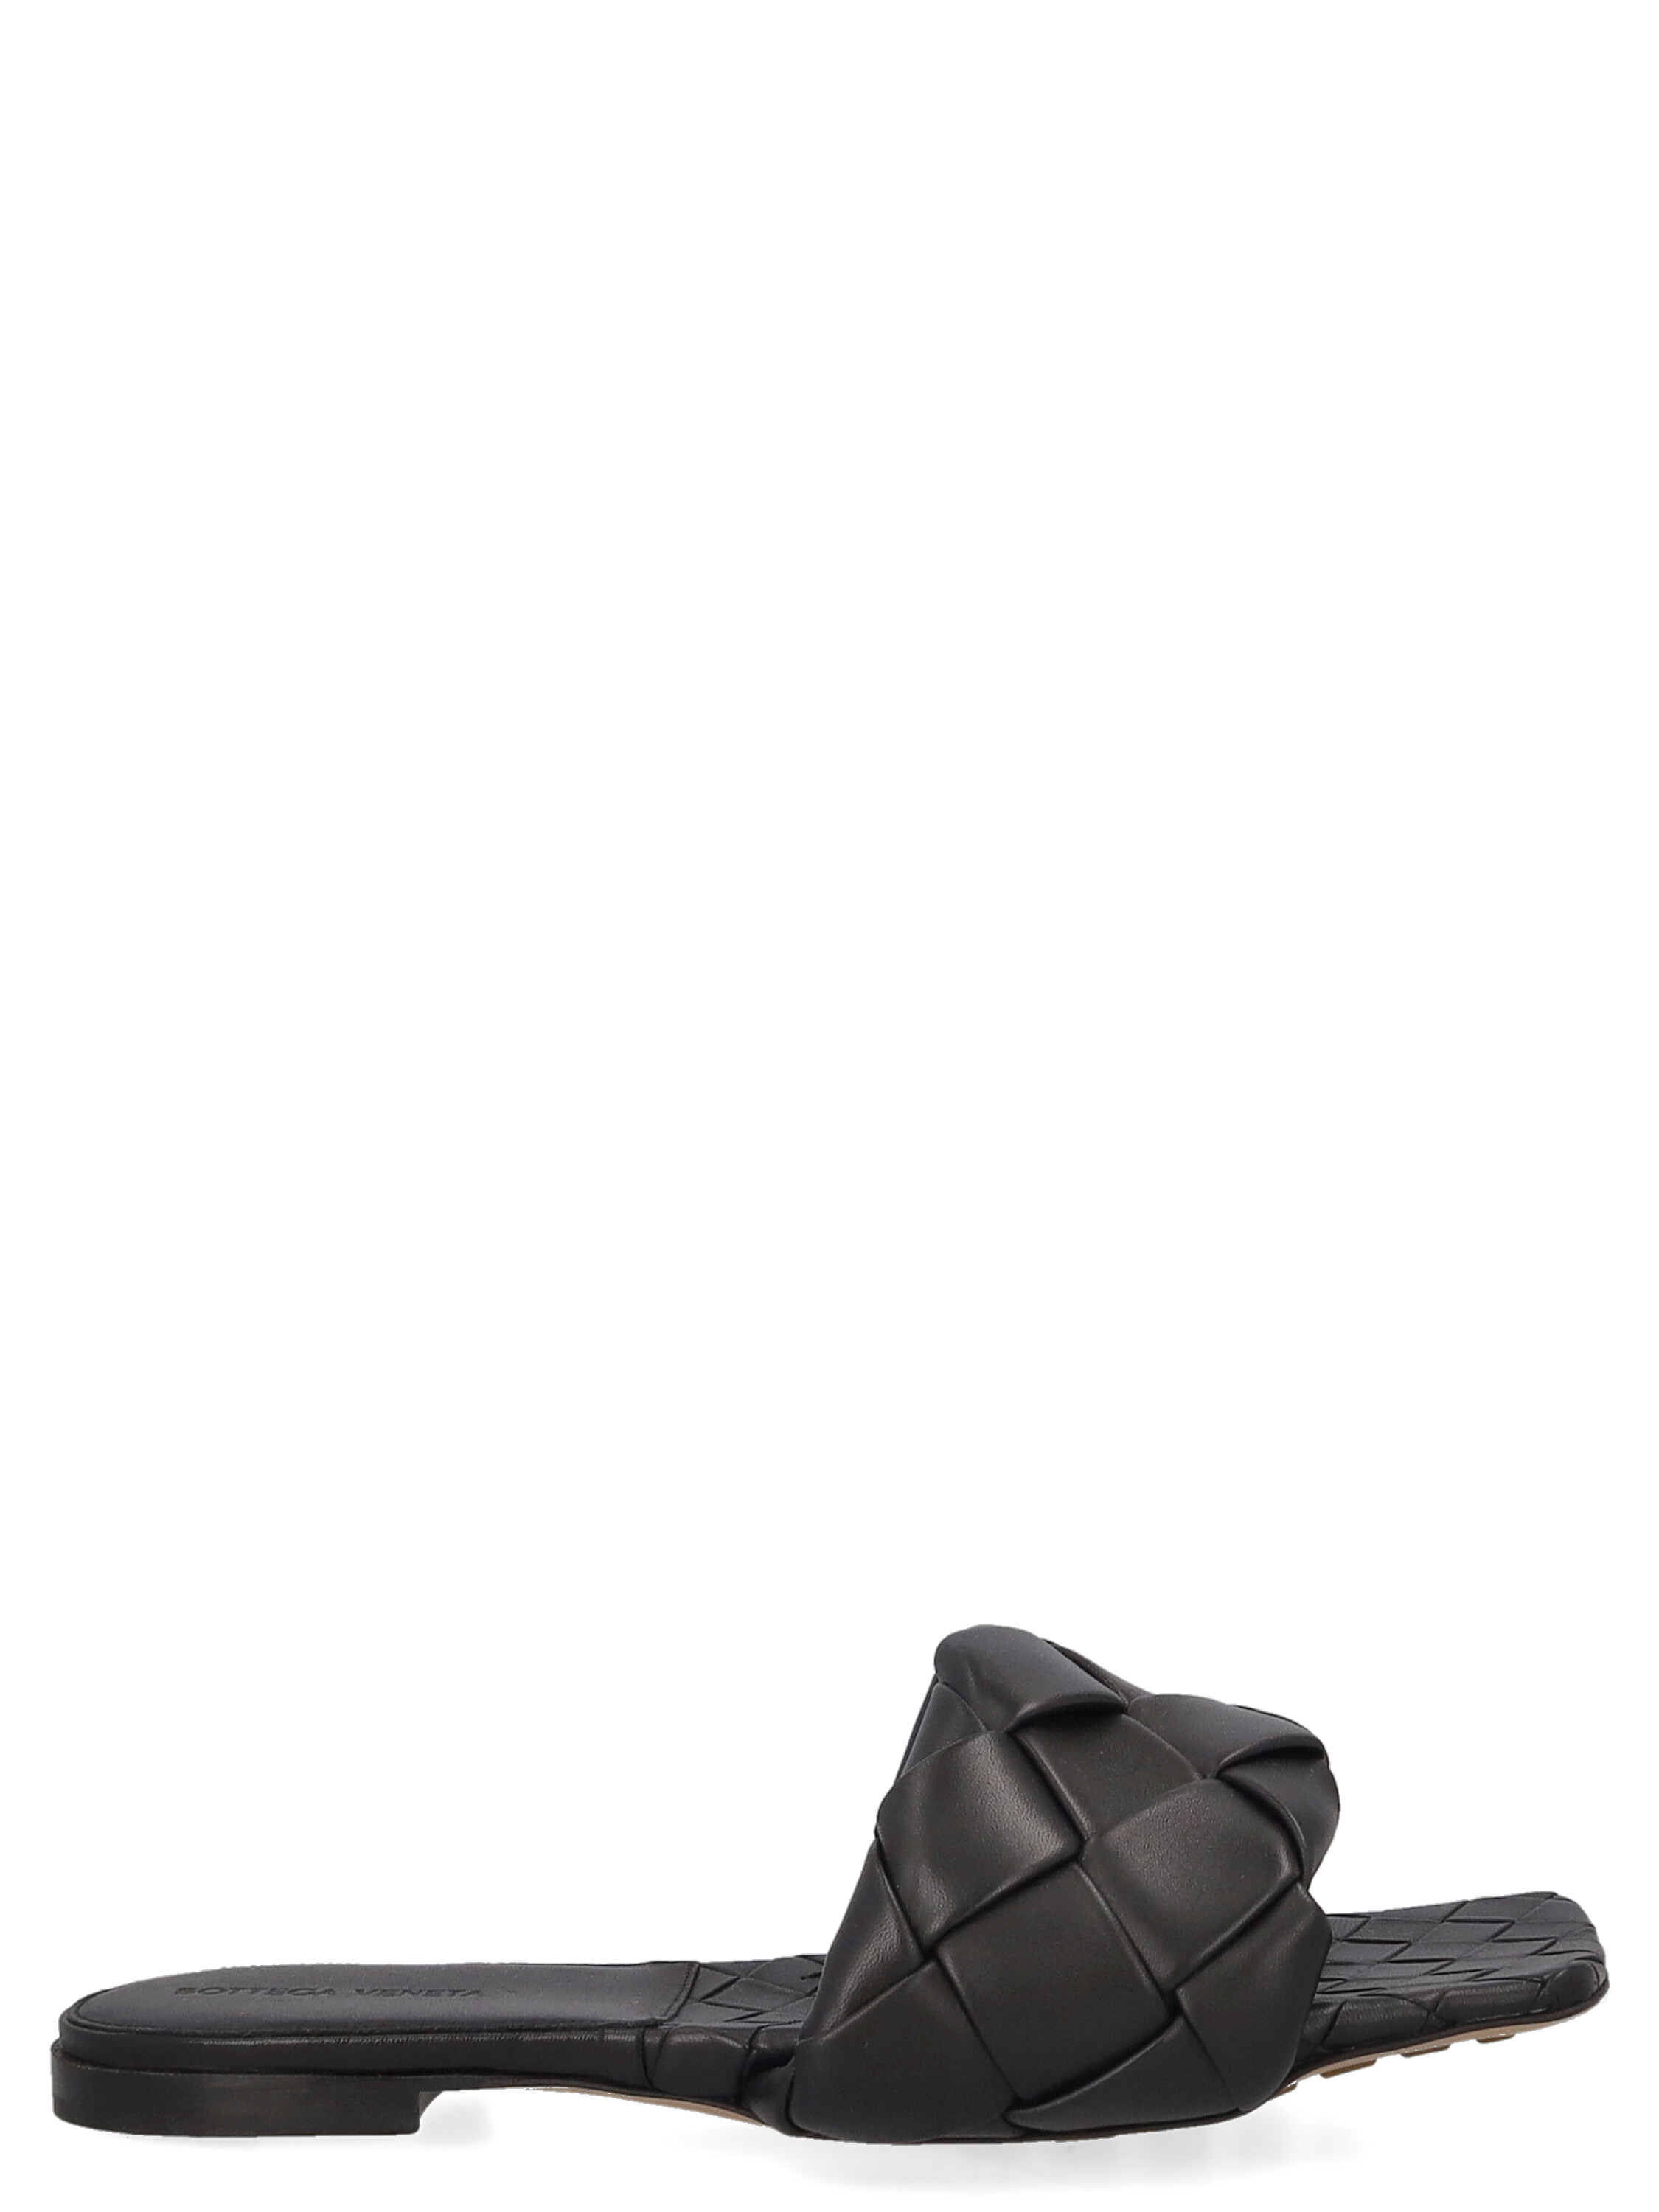 Pre-owned Bottega Veneta Women's Slippers -  - In Black Leather